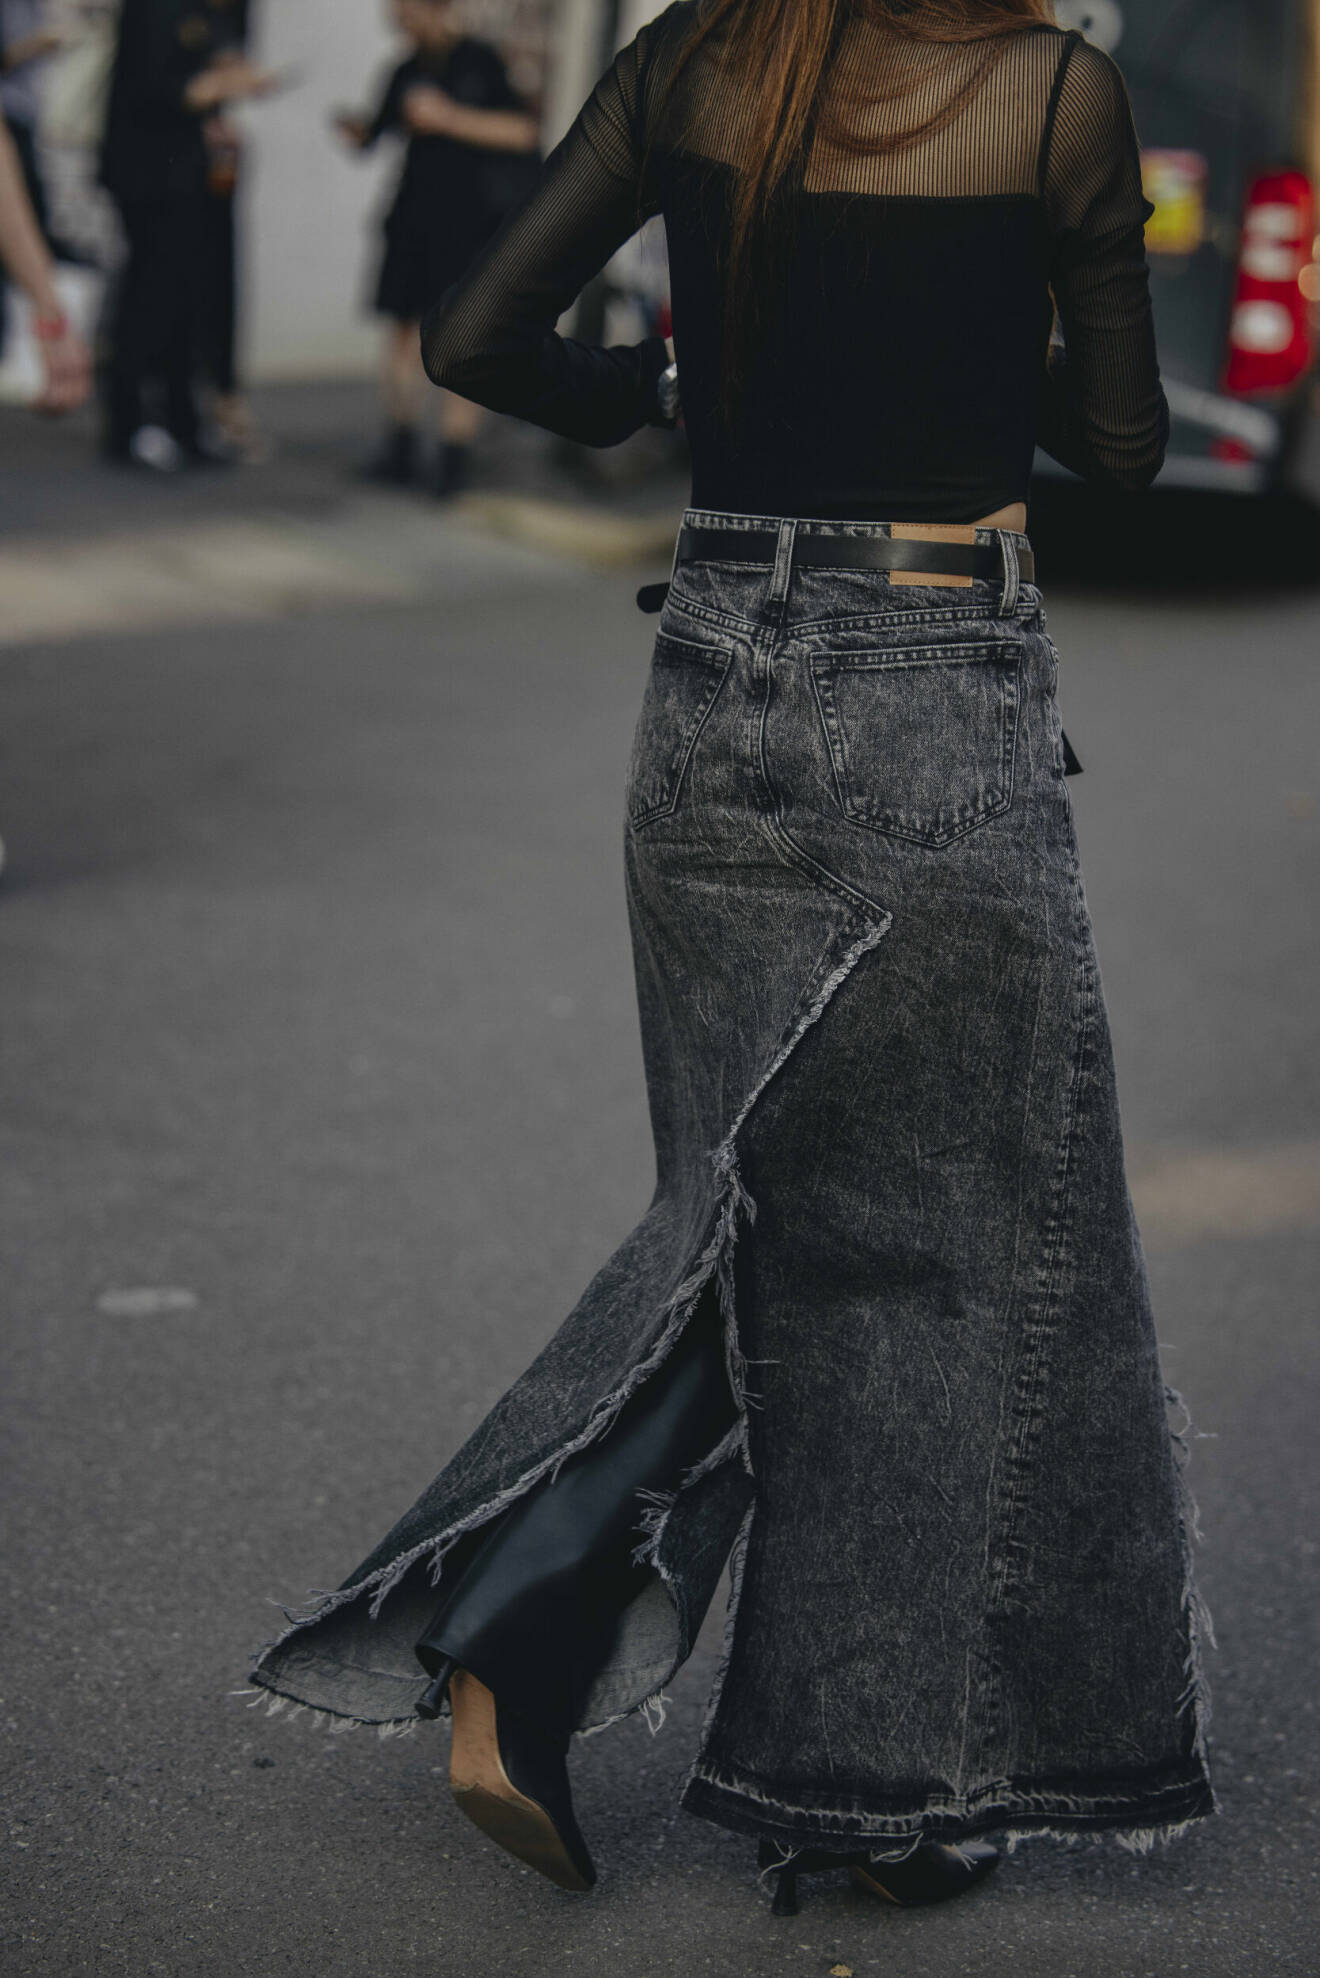 Streetstyle-outfit med en lång grå jeanskjol och höga stövlar.